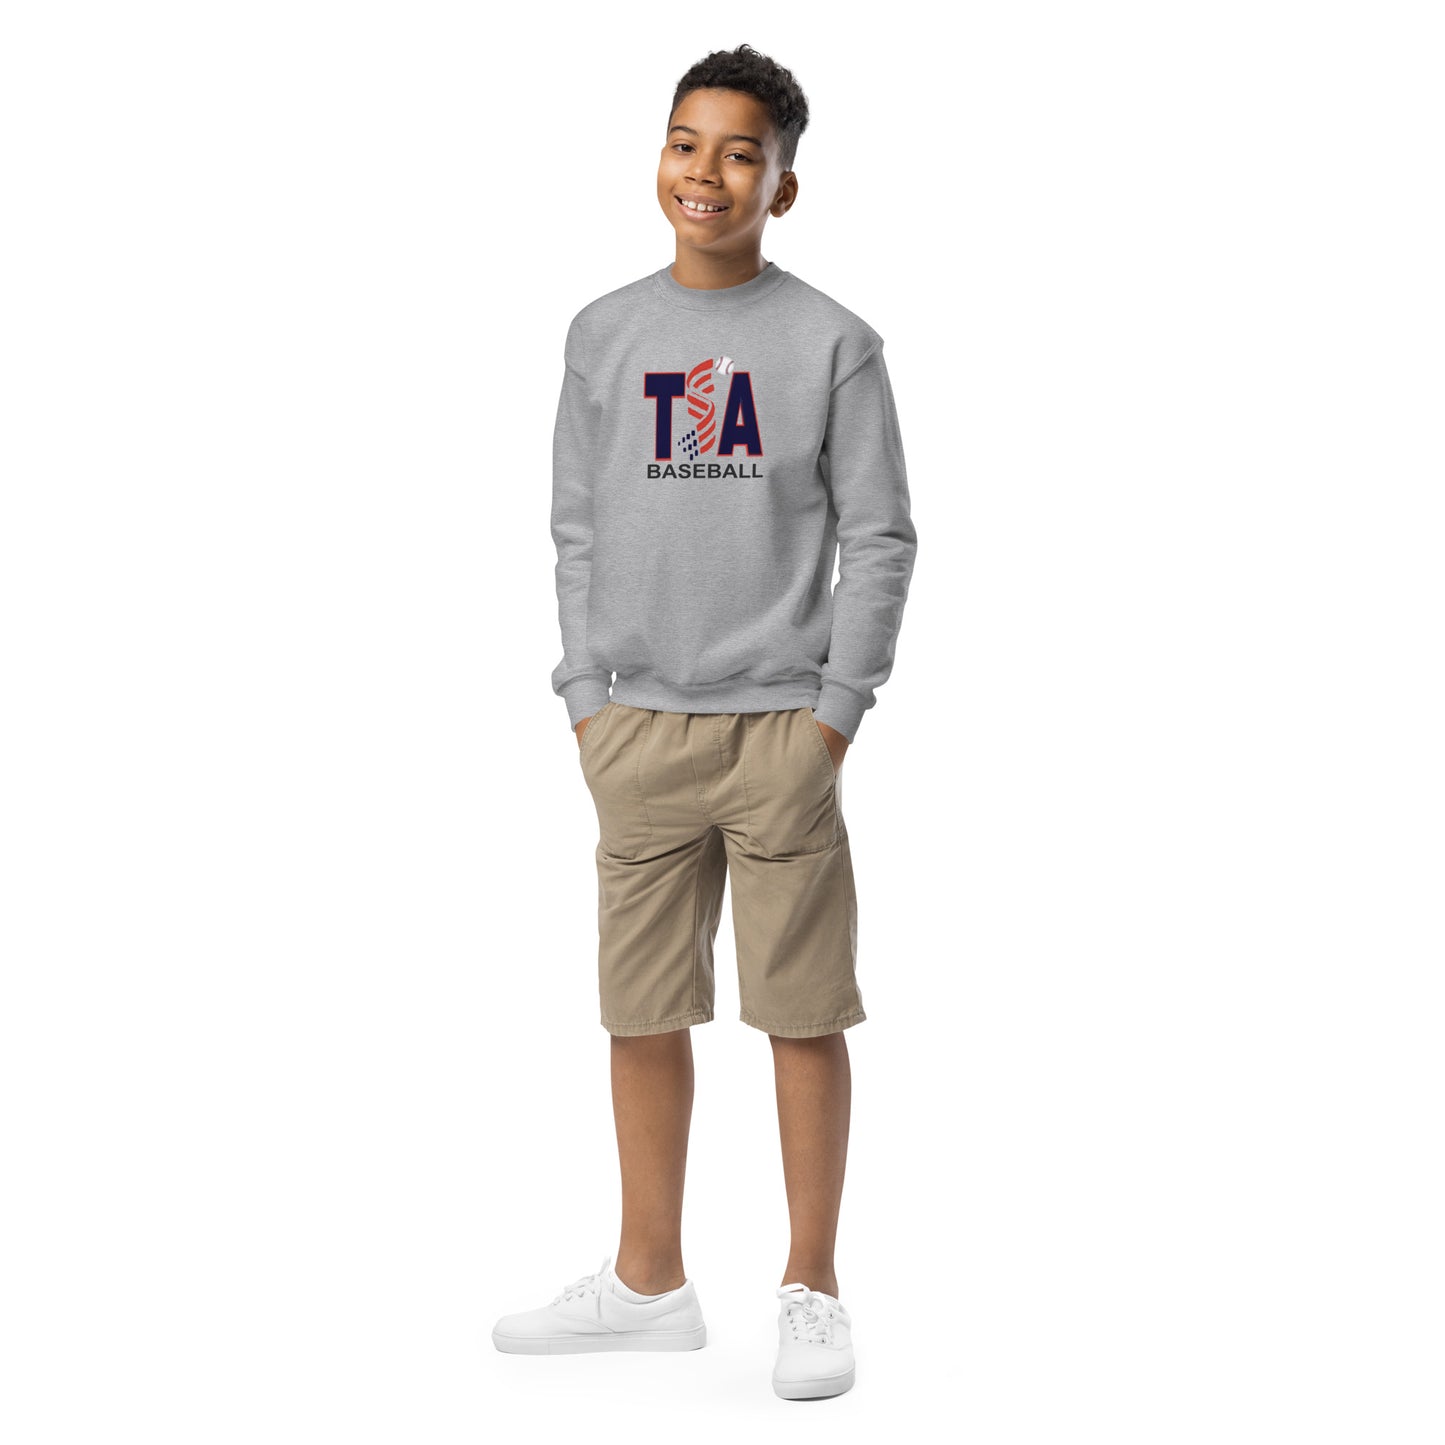 TSA Baseball Youth crewneck sweatshirt